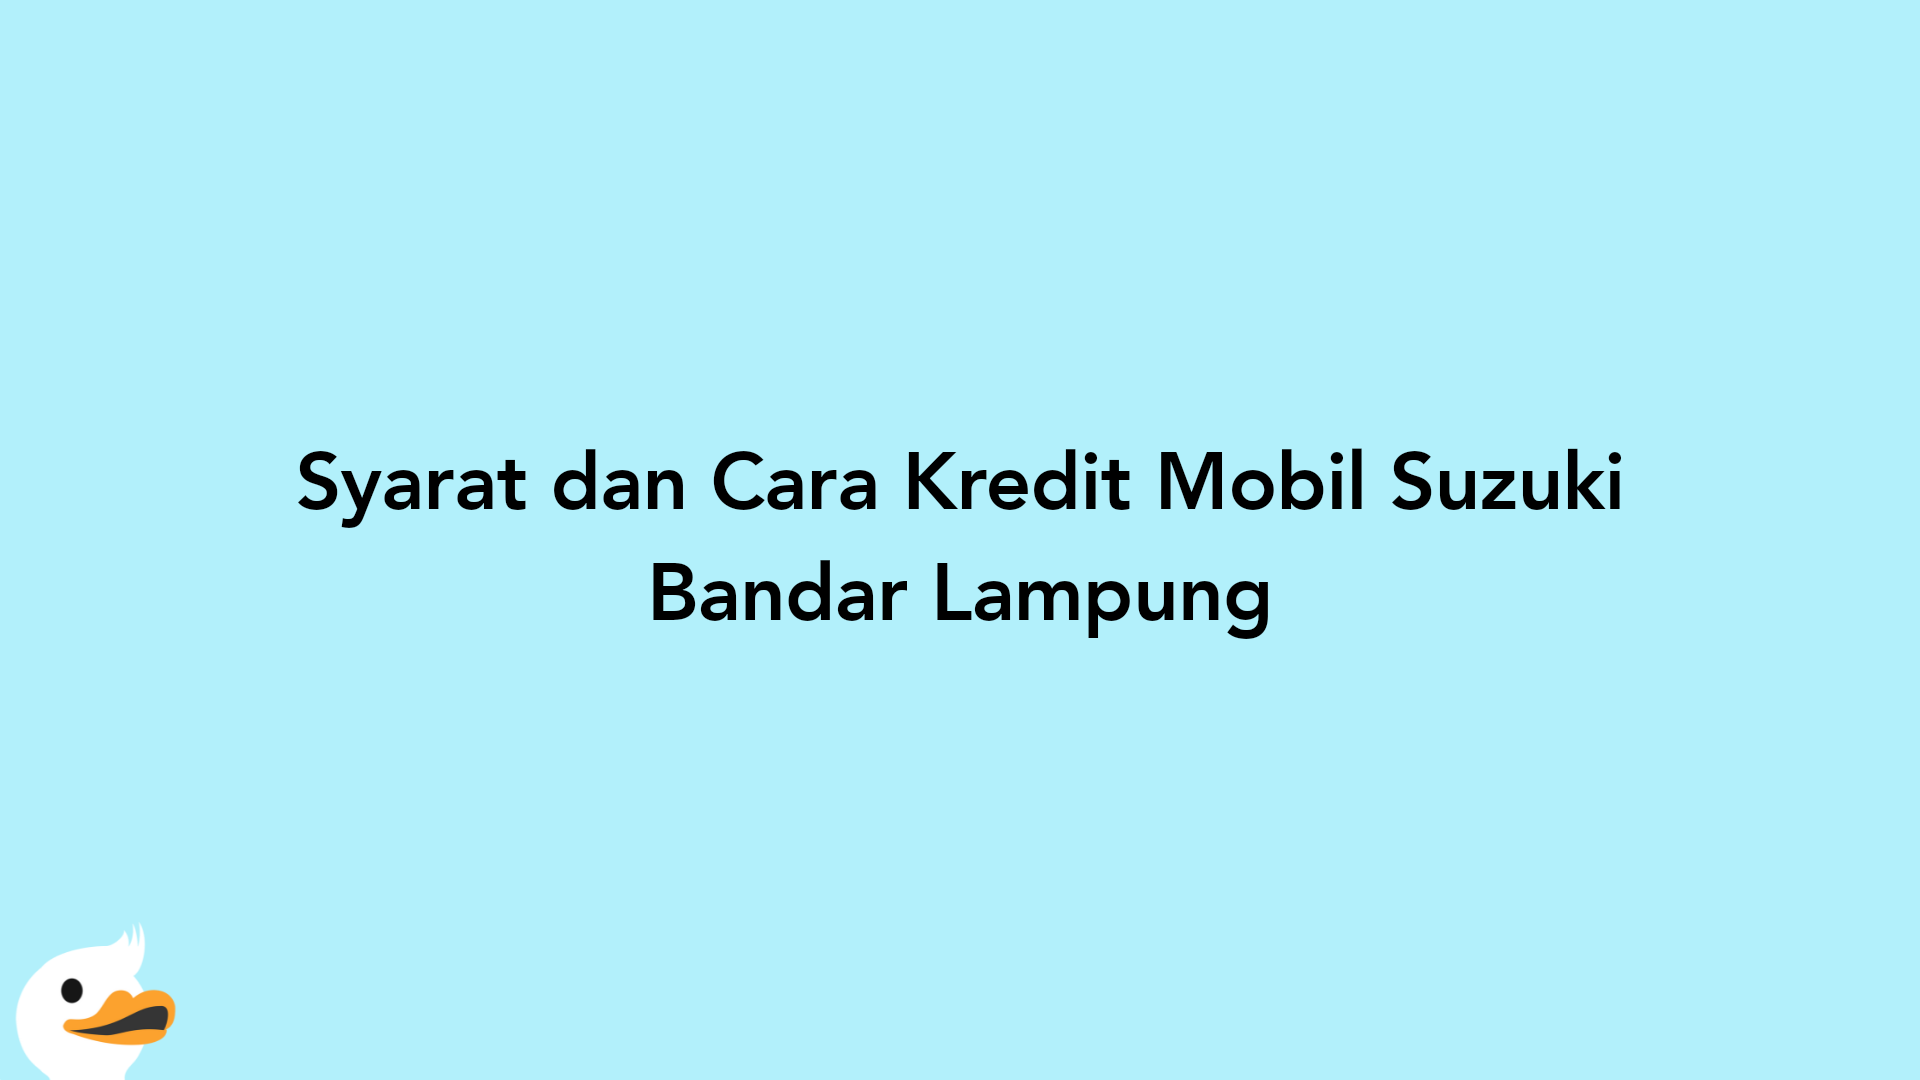 Syarat dan Cara Kredit Mobil Suzuki Bandar Lampung